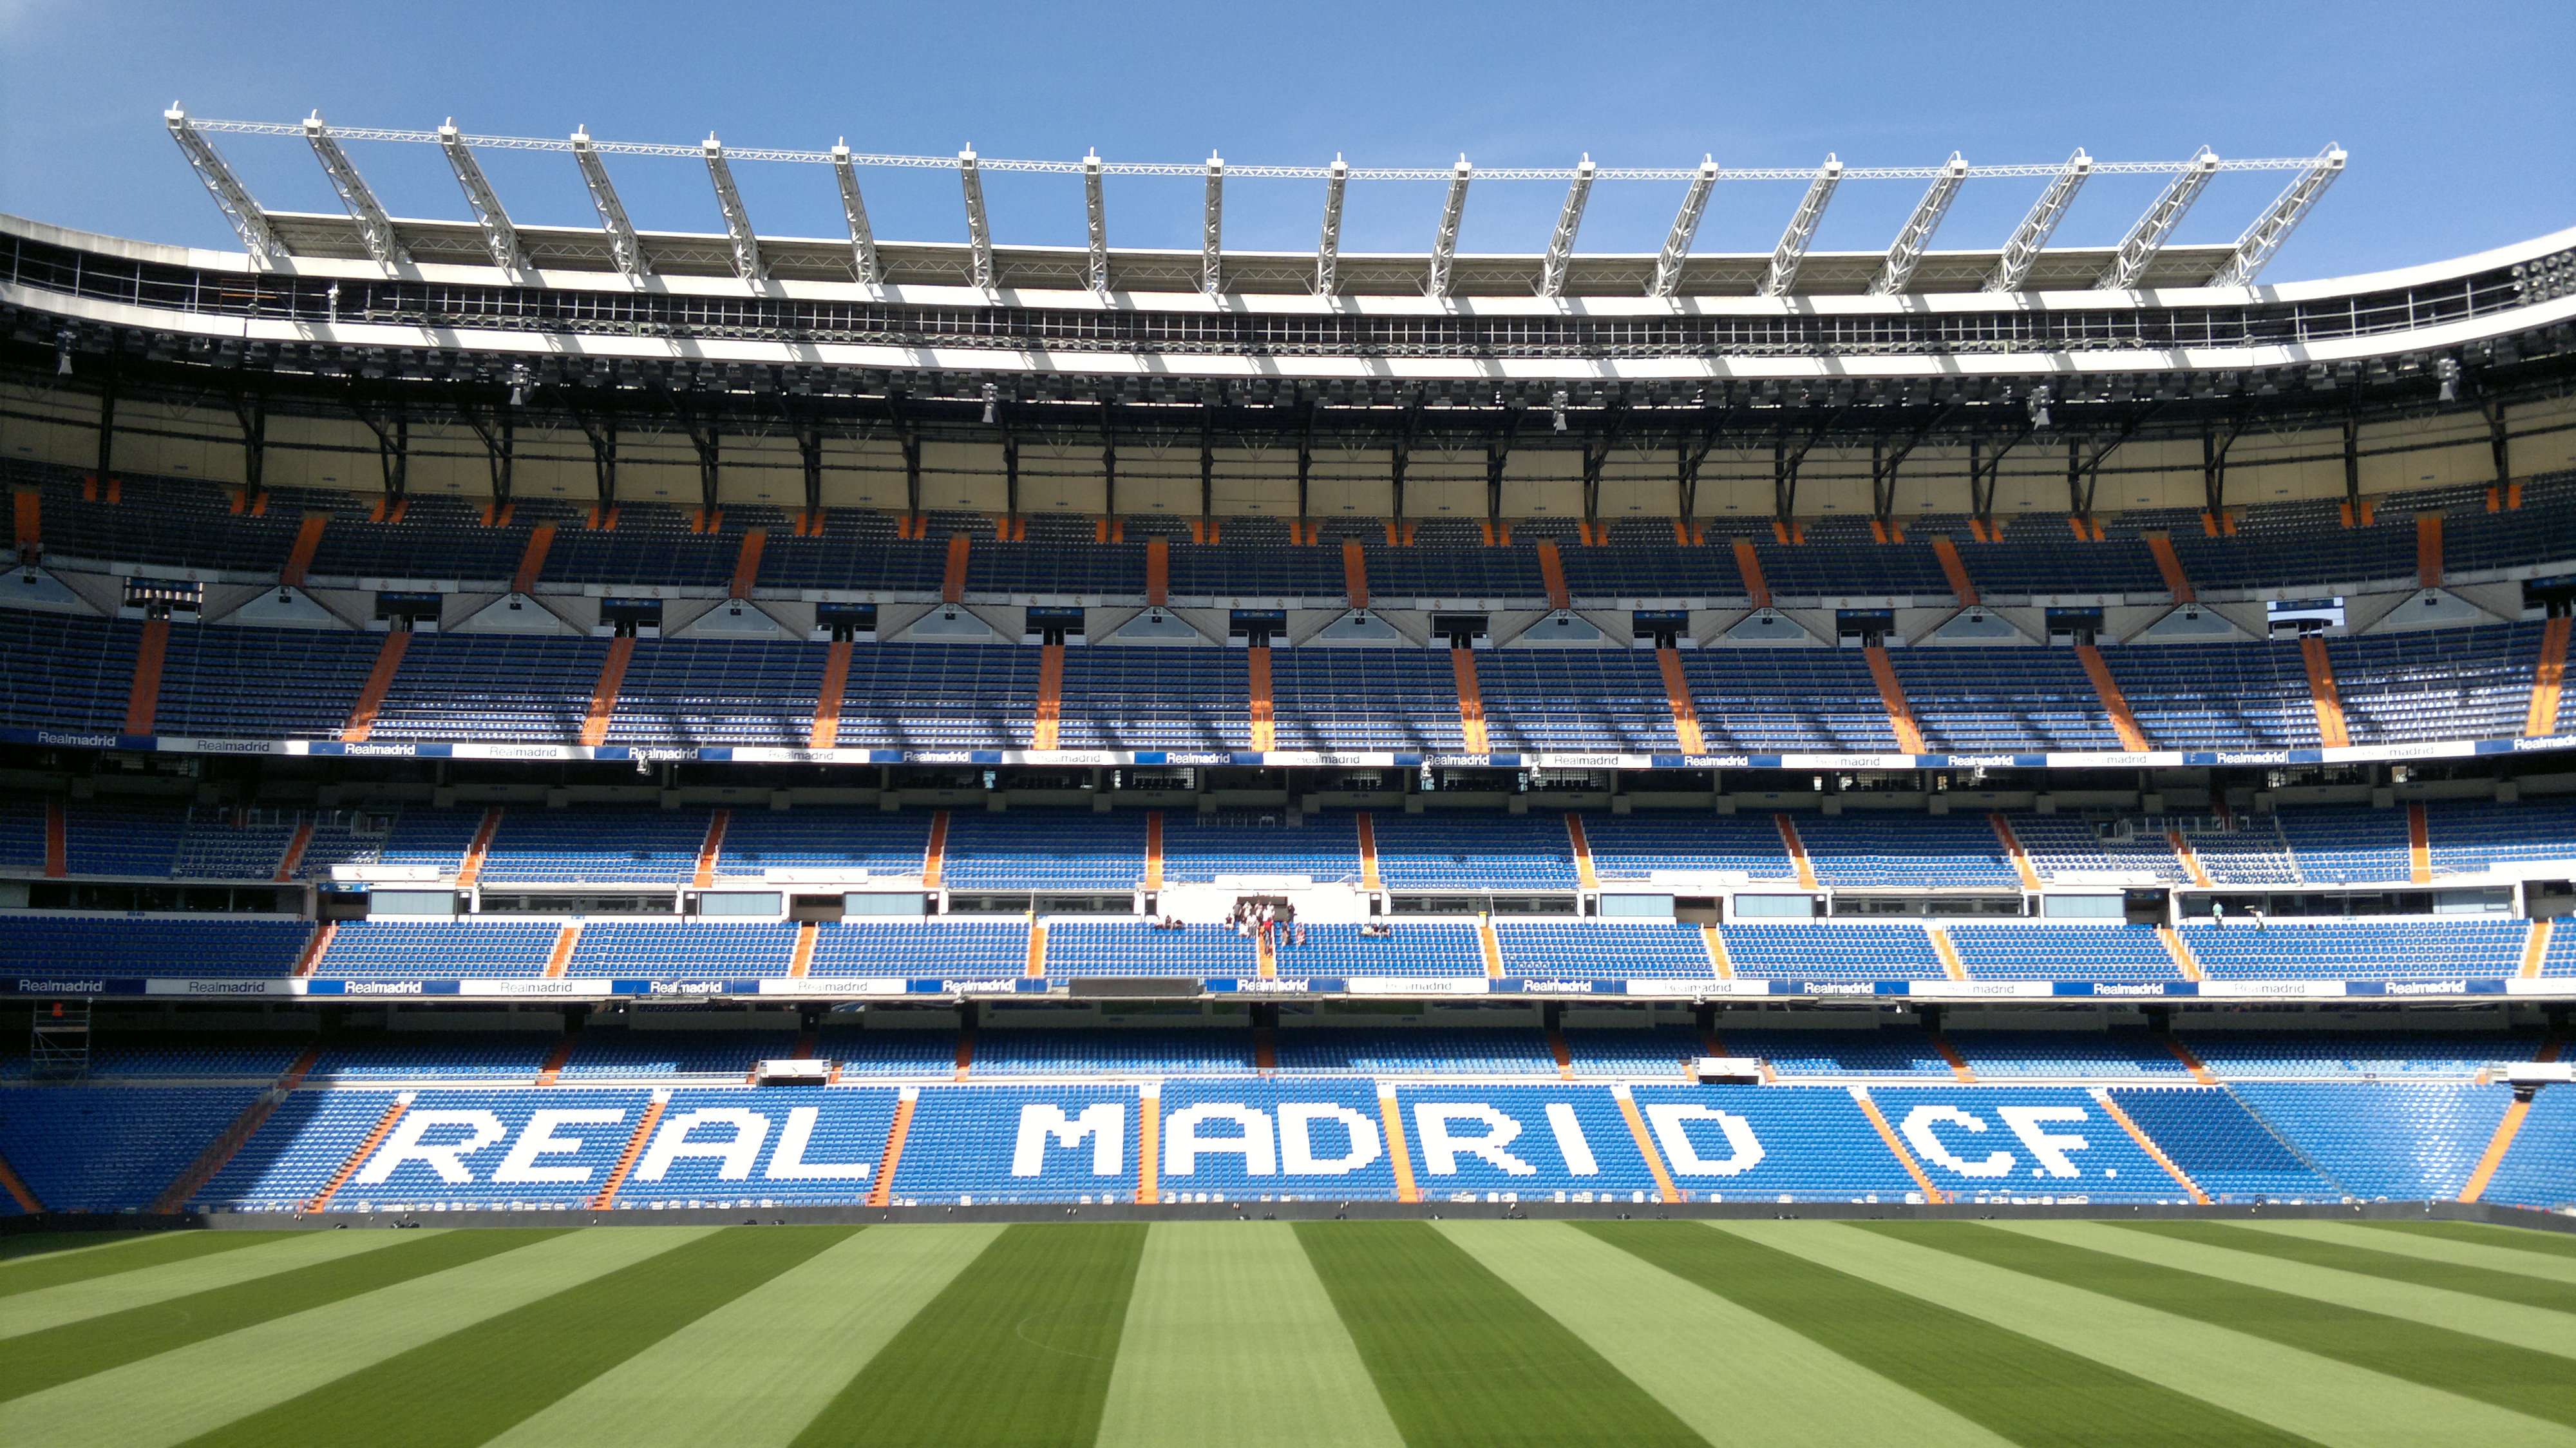 Preview Santiago Bernabeu - Tour Bernabéu , HD Wallpaper & Backgrounds